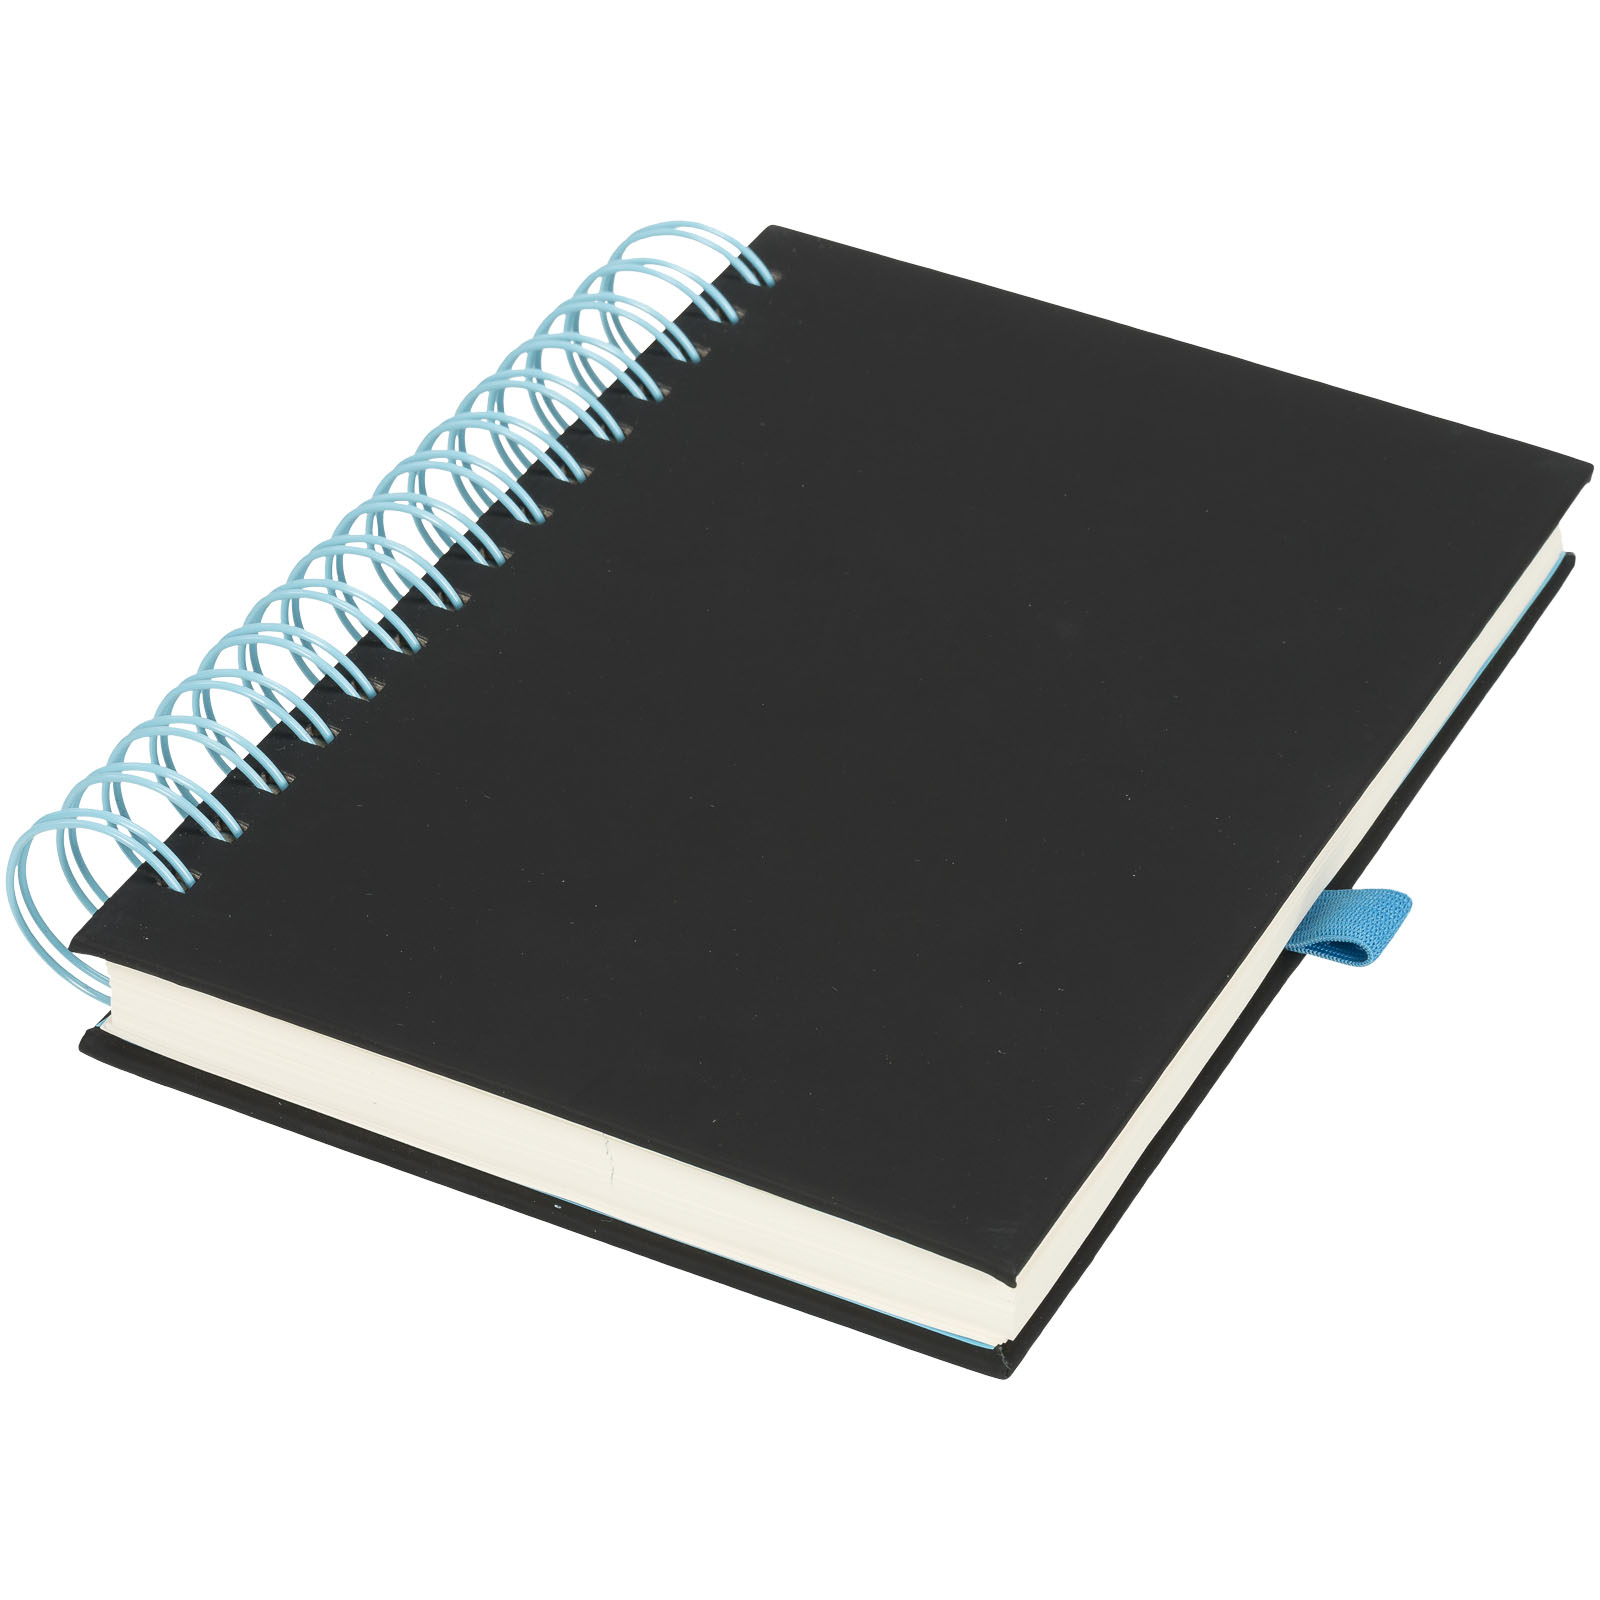 Notebooks & Desk Essentials - Wiro journal